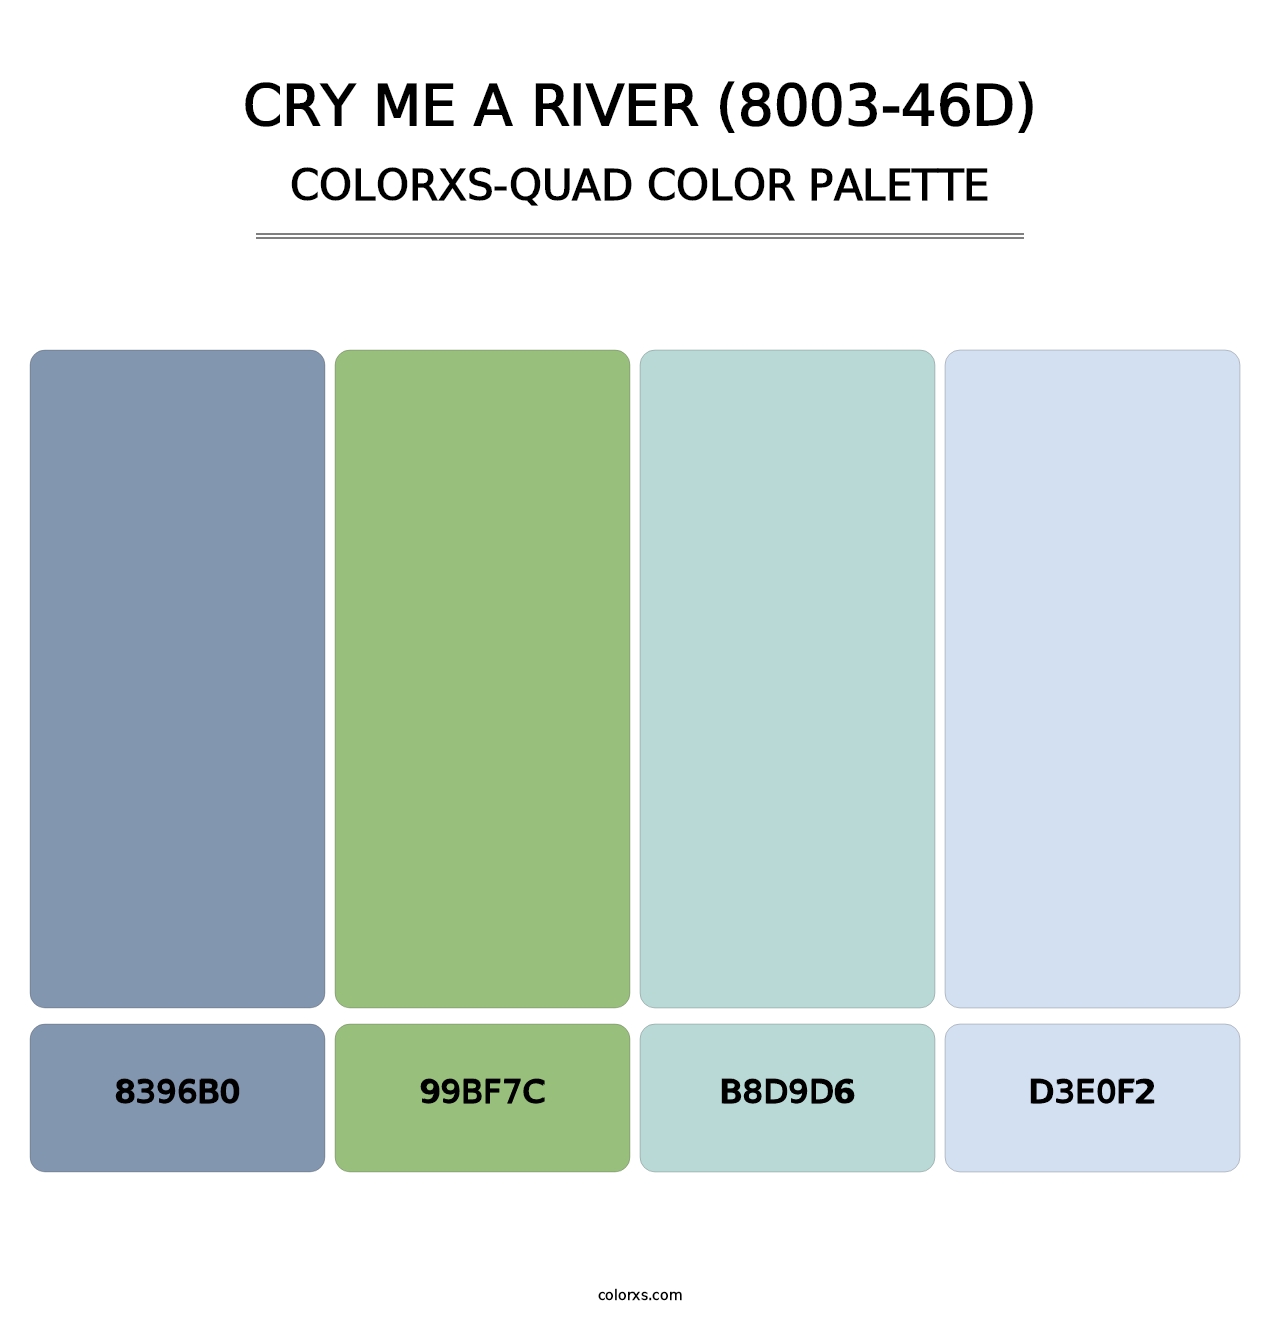 Cry Me a River (8003-46D) - Colorxs Quad Palette